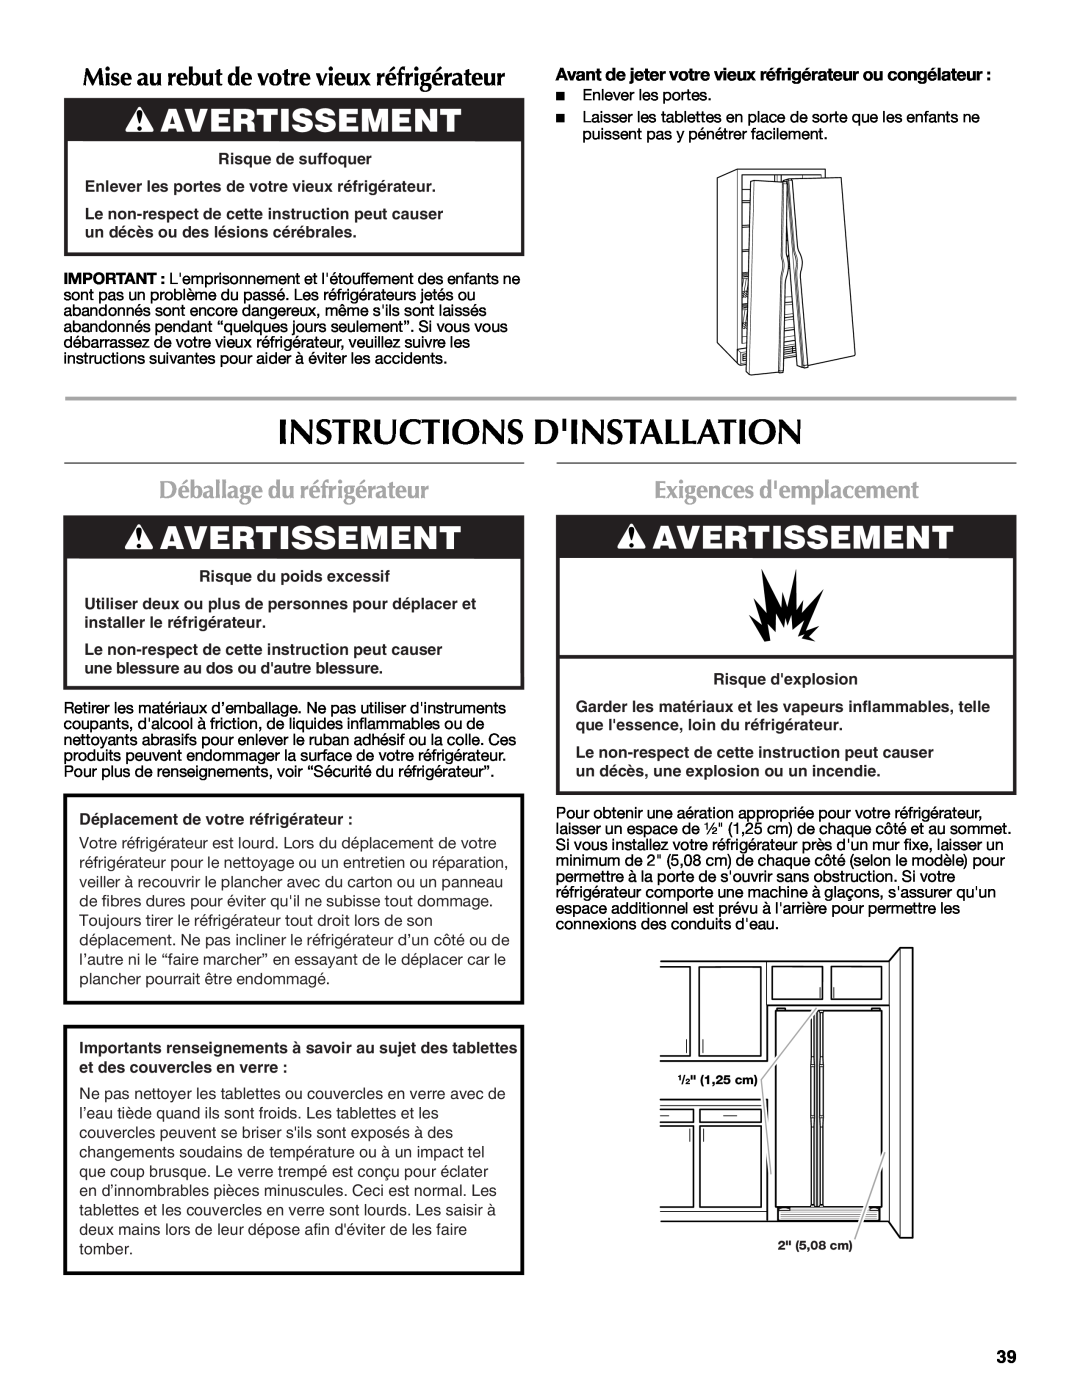 Maytag W10237808A Instructions Dinstallation, Avertissement, Déballage du réfrigérateur, Exigences demplacement 